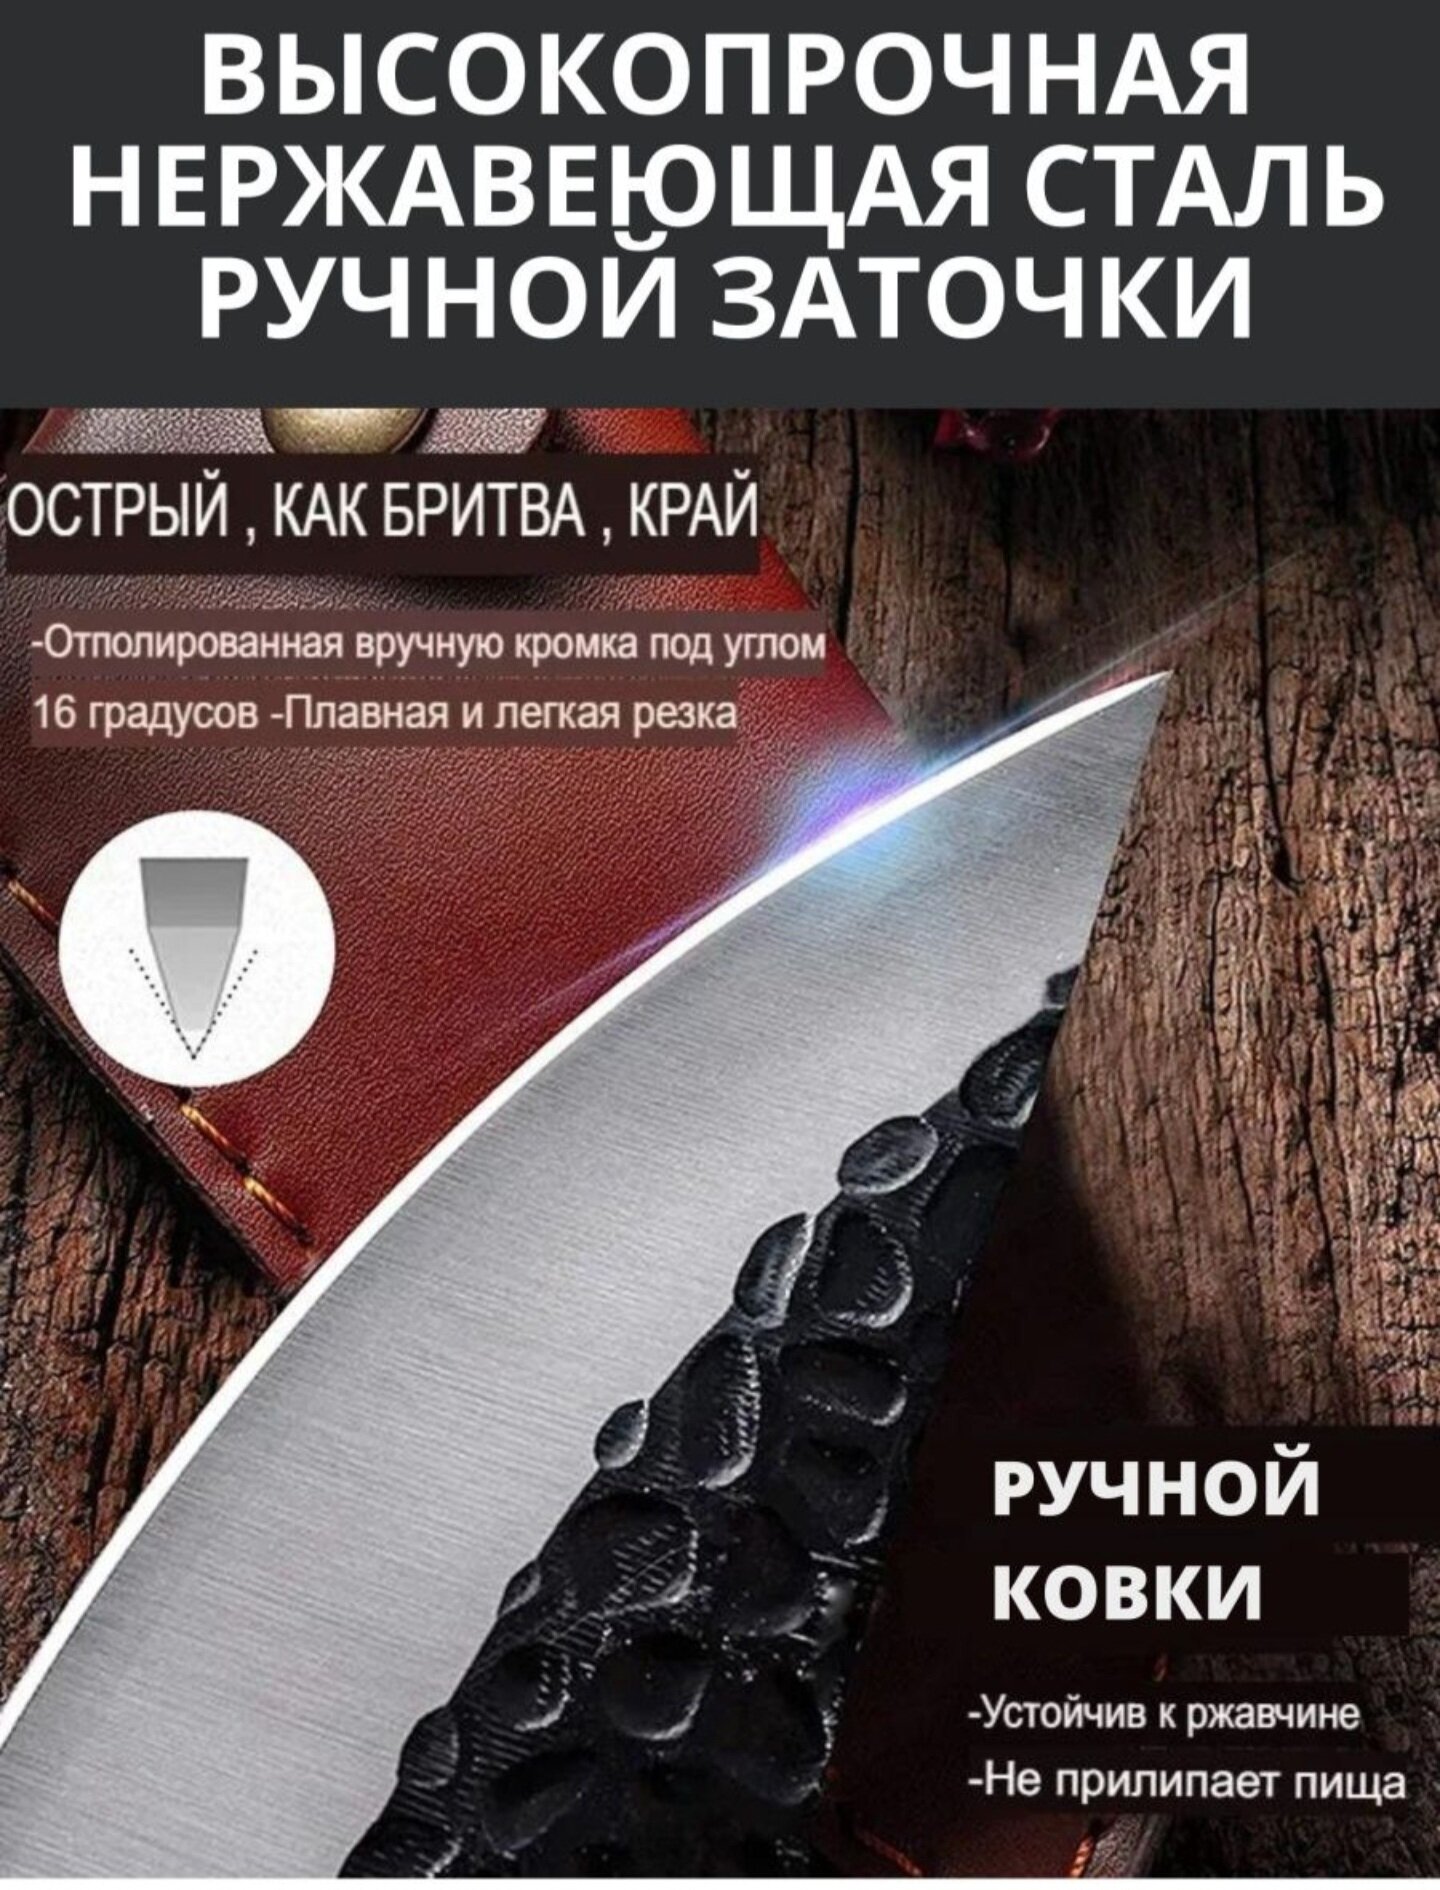 Нож для мясника с футляром / Подходит для охоты на открытом воздухе и убоя кожи